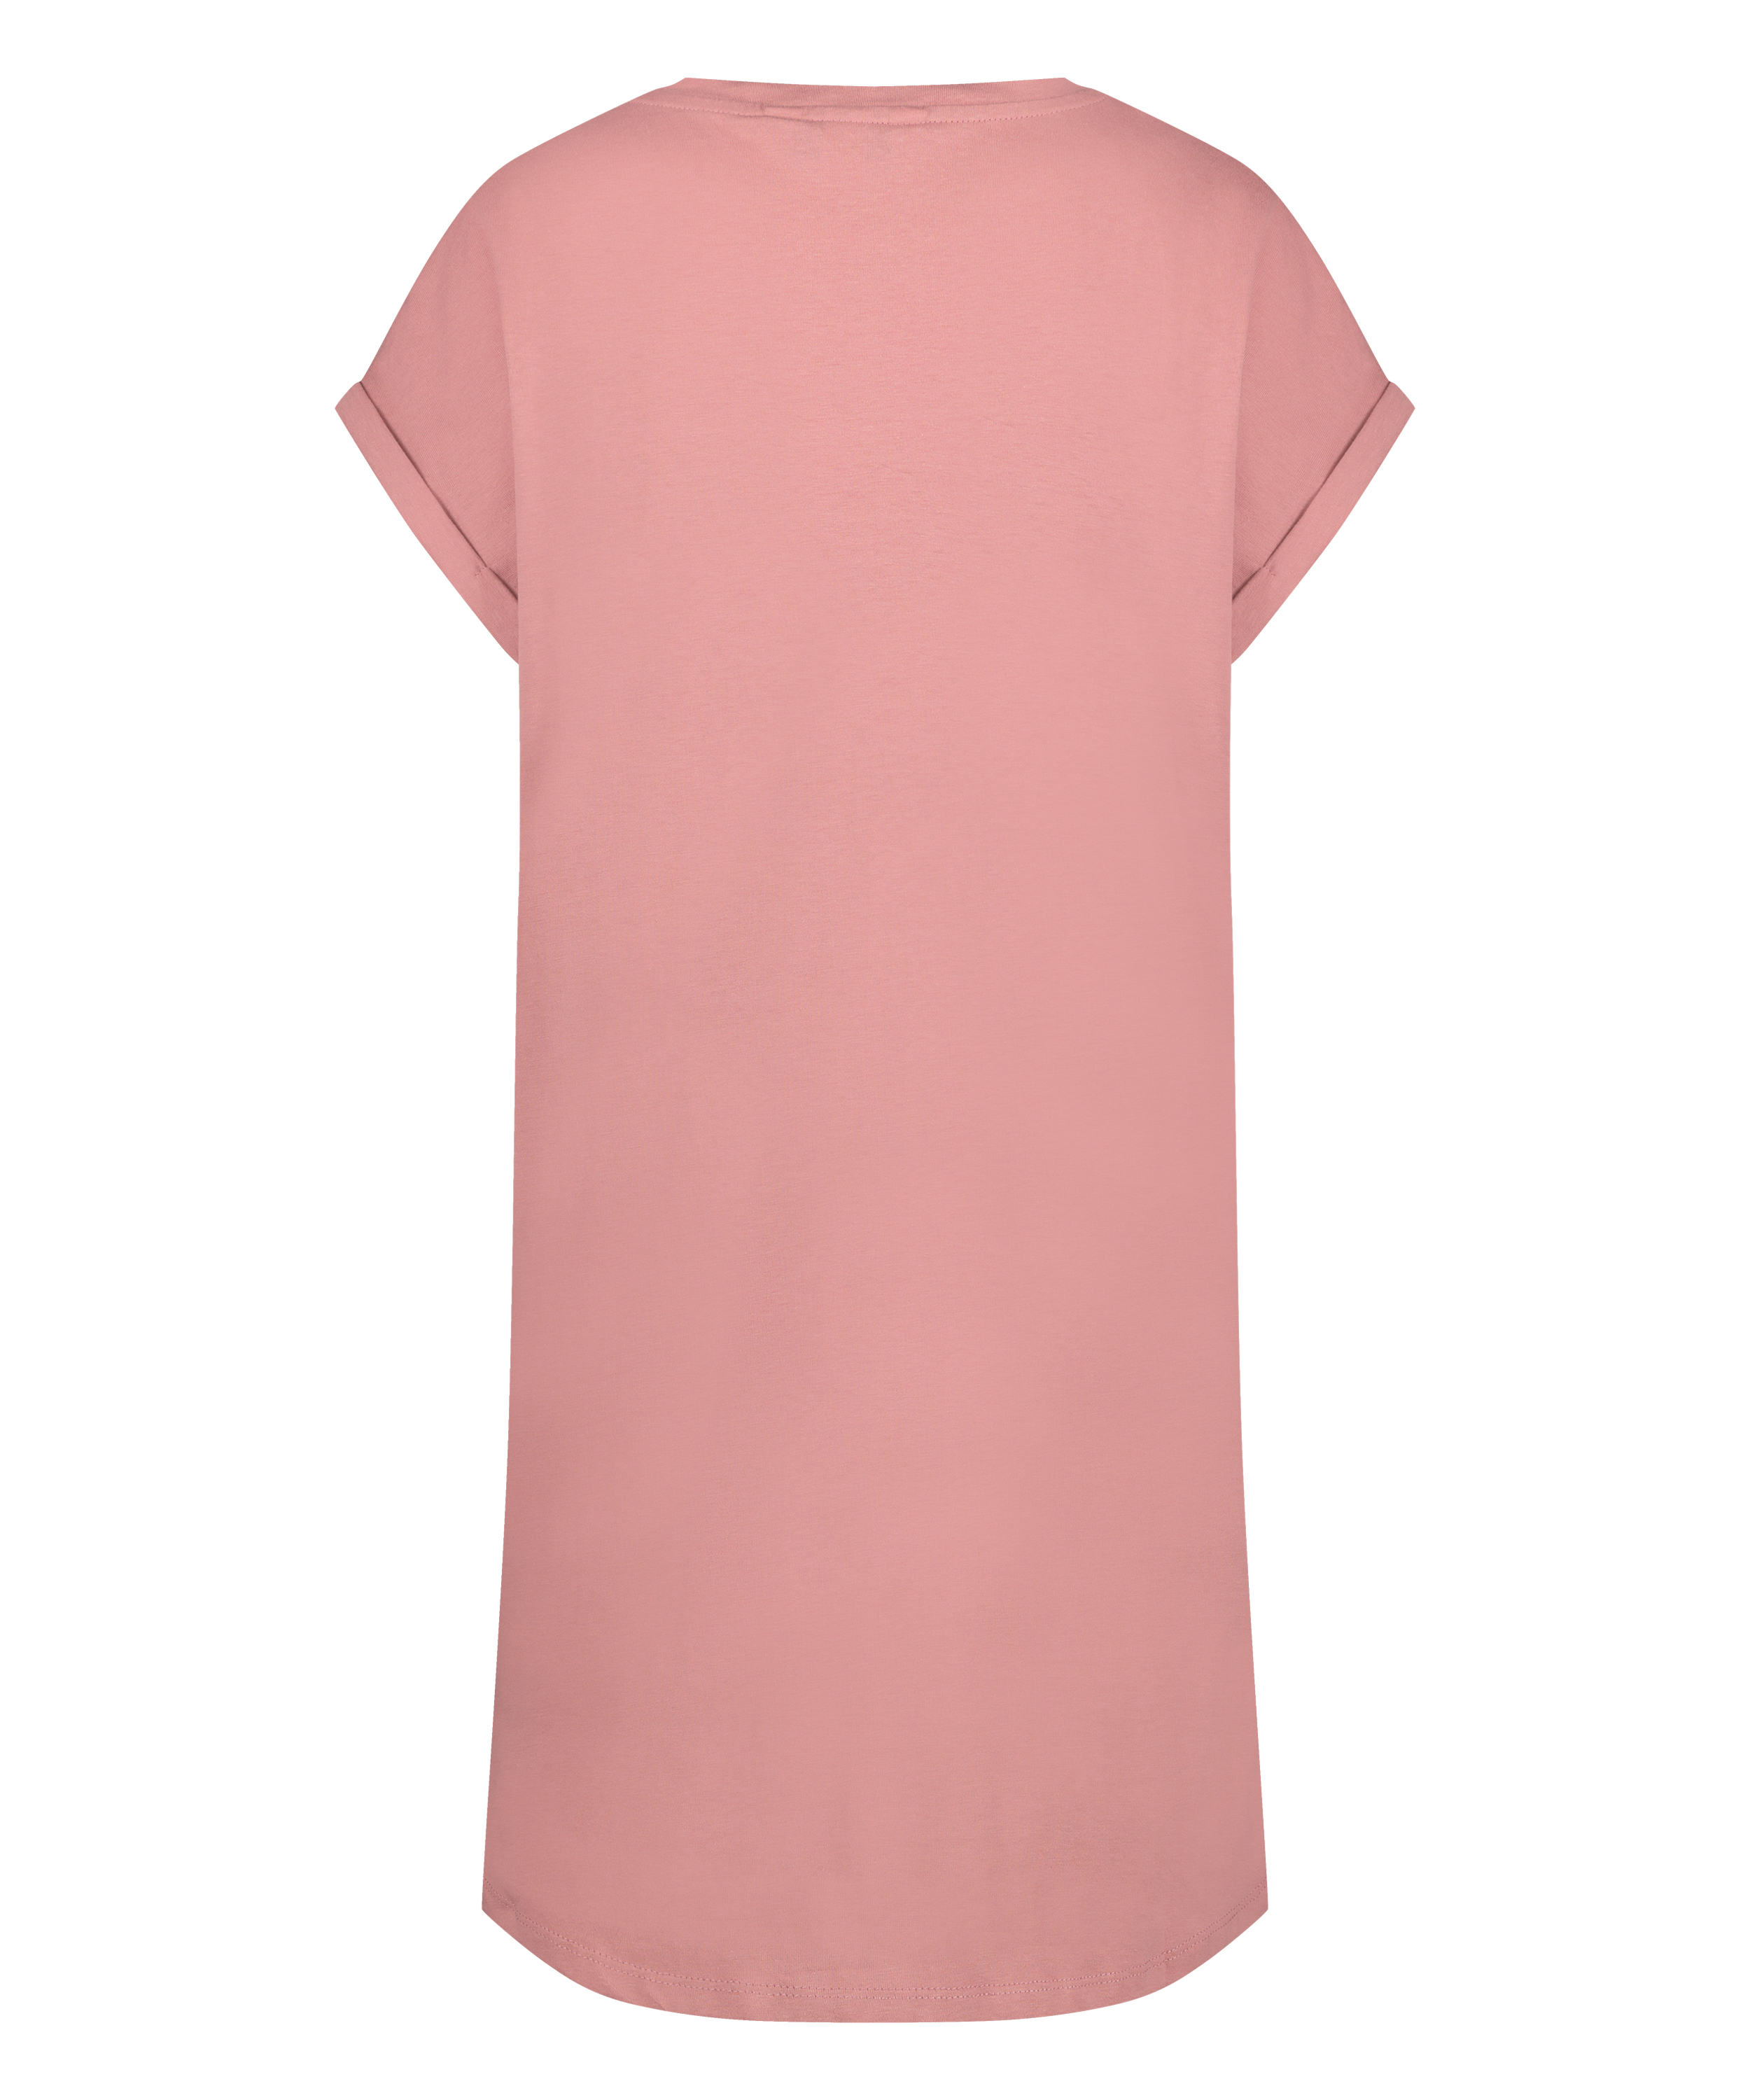 Nat-T-shirt med rund hals, pink, main